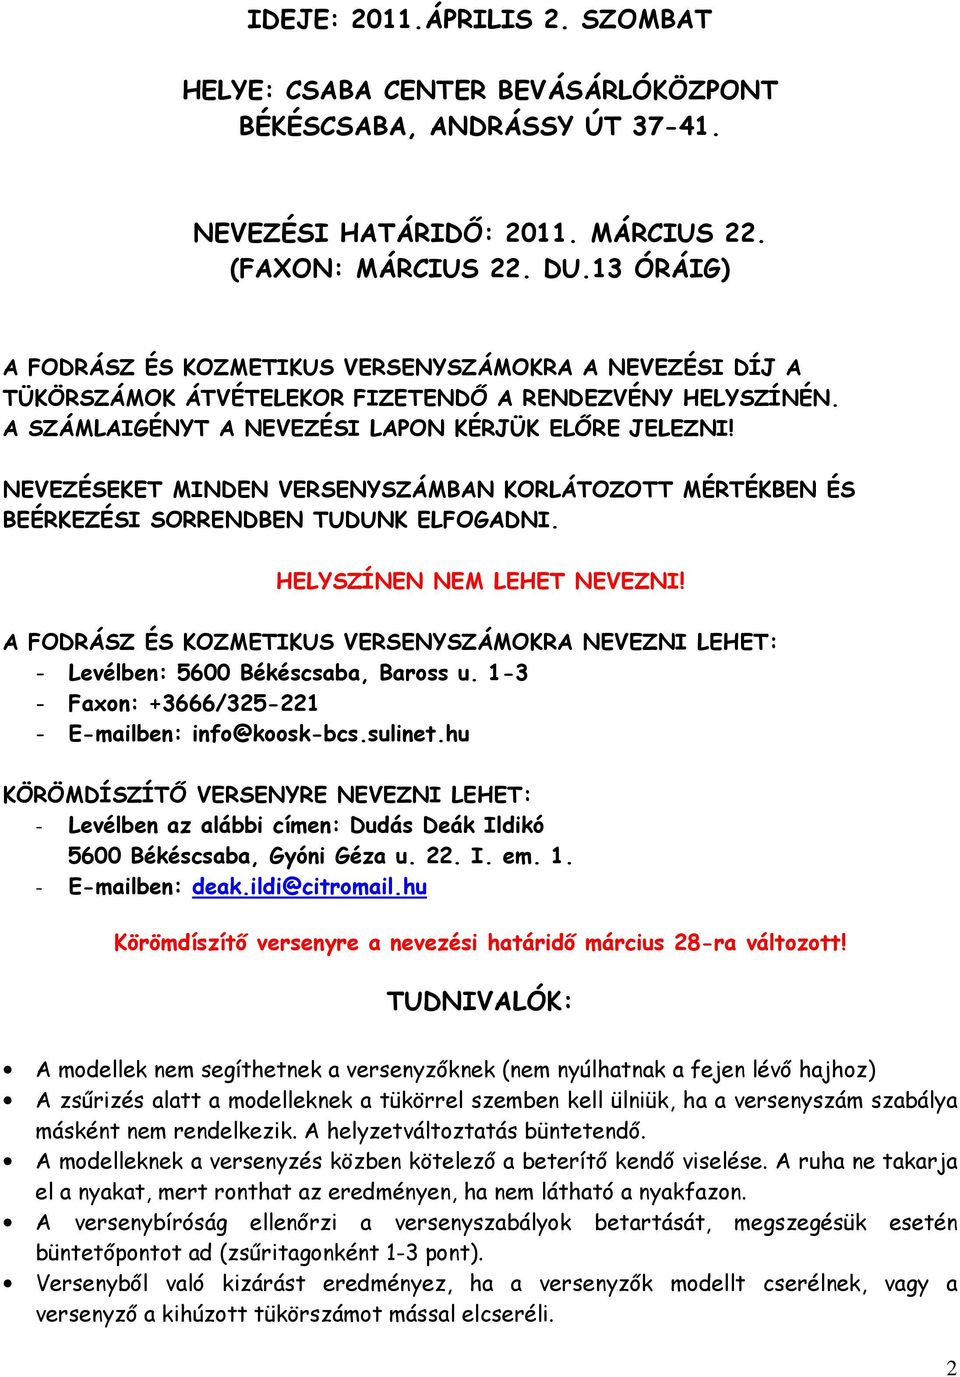 FODRÁSZ-KOZMETIKUS- KÖRÖMDÍSZÍTŐ TANULÓ- és FELNŐTT VERSENY - PDF Free  Download